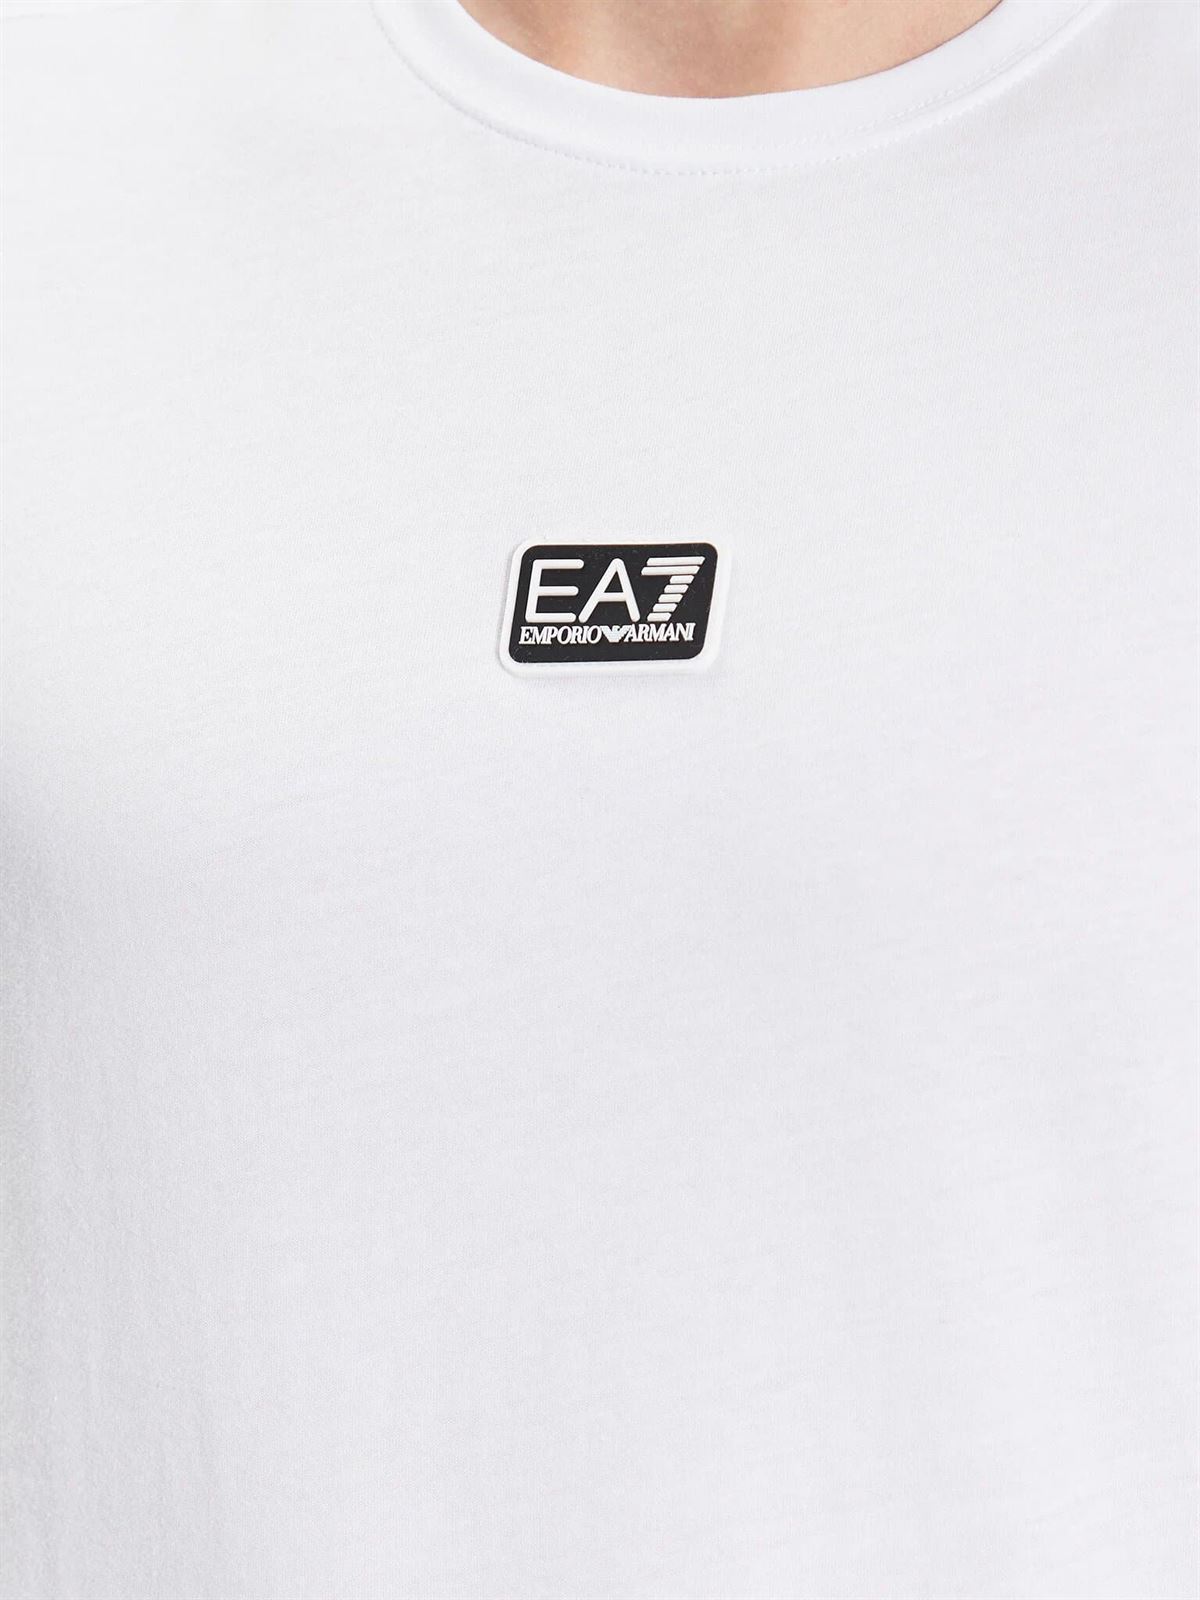 Camiseta EA7 Emporio Armani 3RPT05 PJ02Z 0100 white - Imagen 3